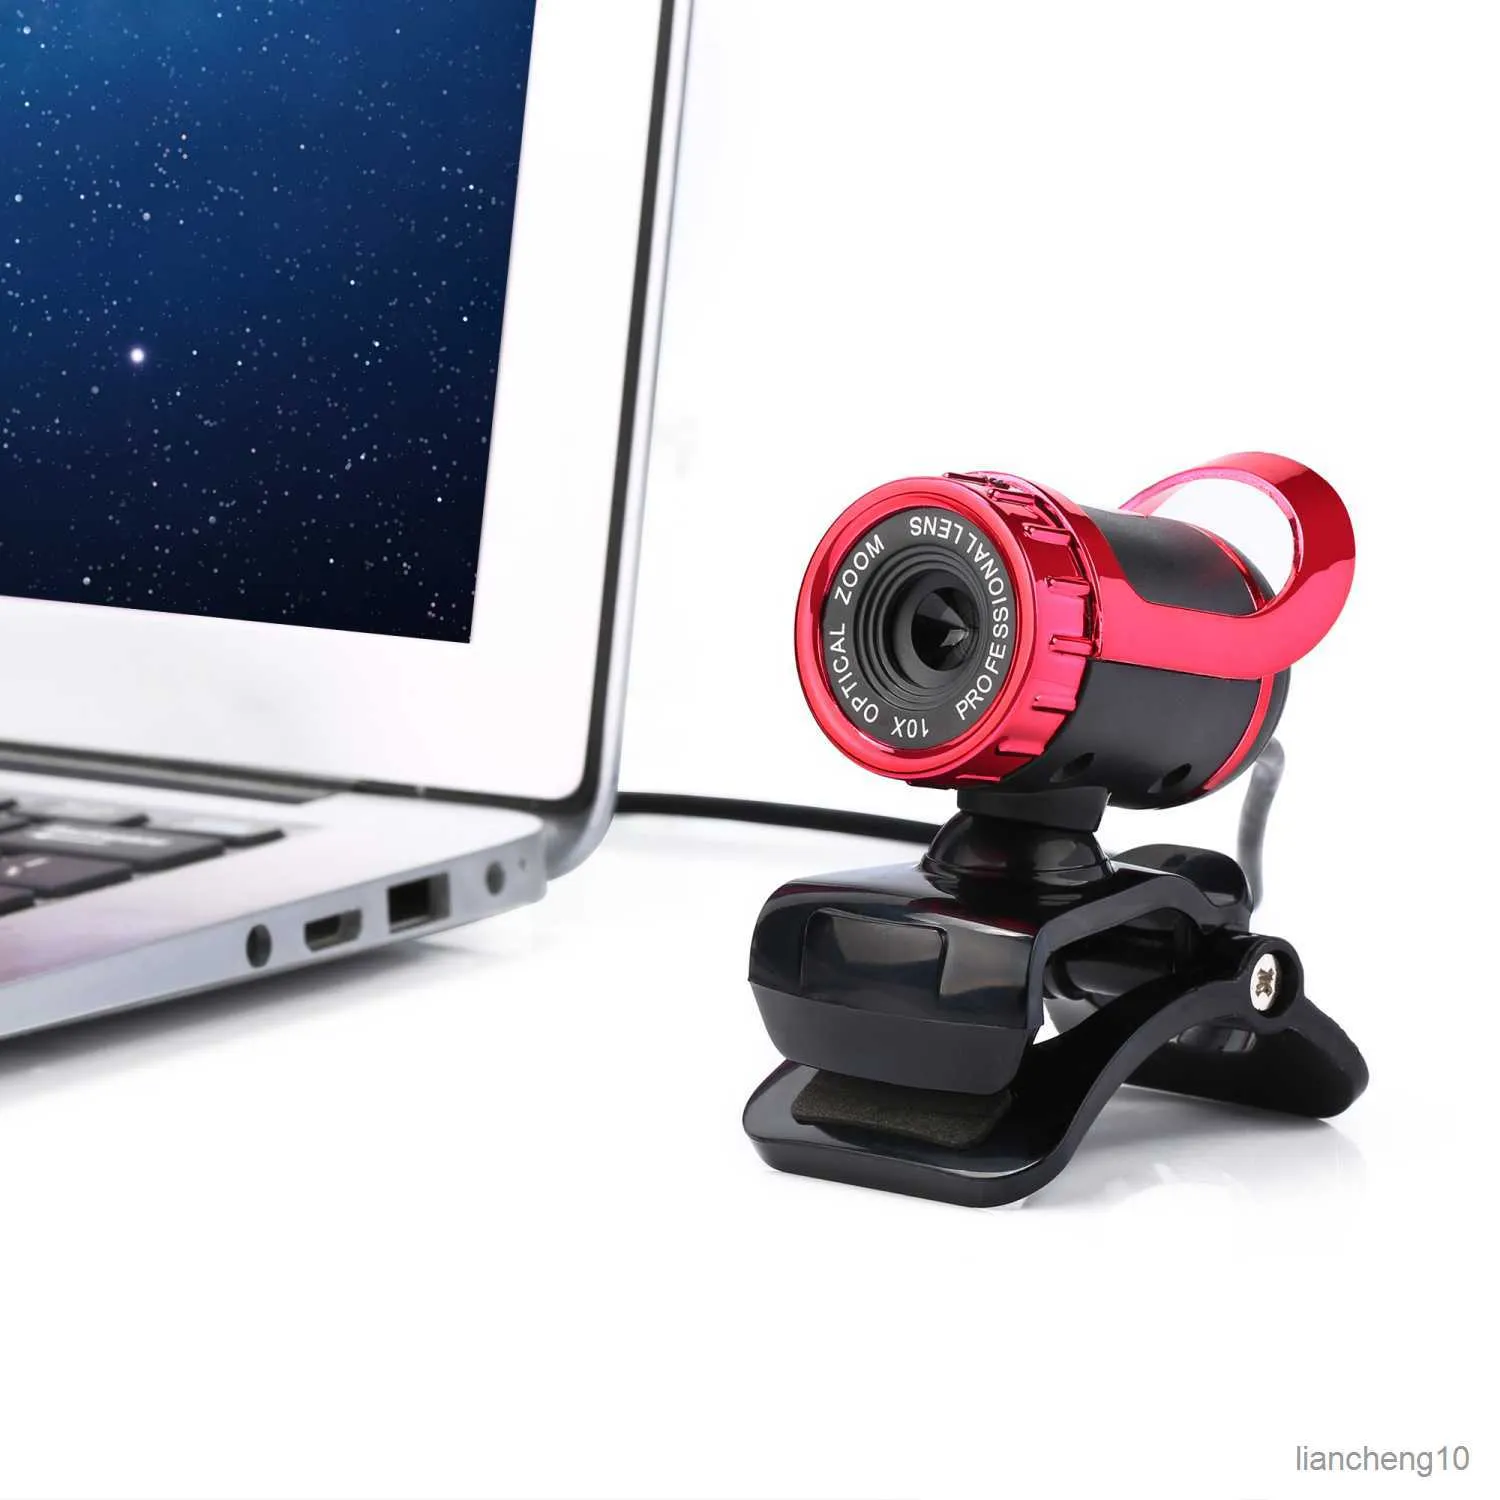 ウェブカメラ回転可能なビジョンウェブカメラ高解像度ウェブ度クリップオンコンピュータPCラップトップノートブックウェブカメラR230728